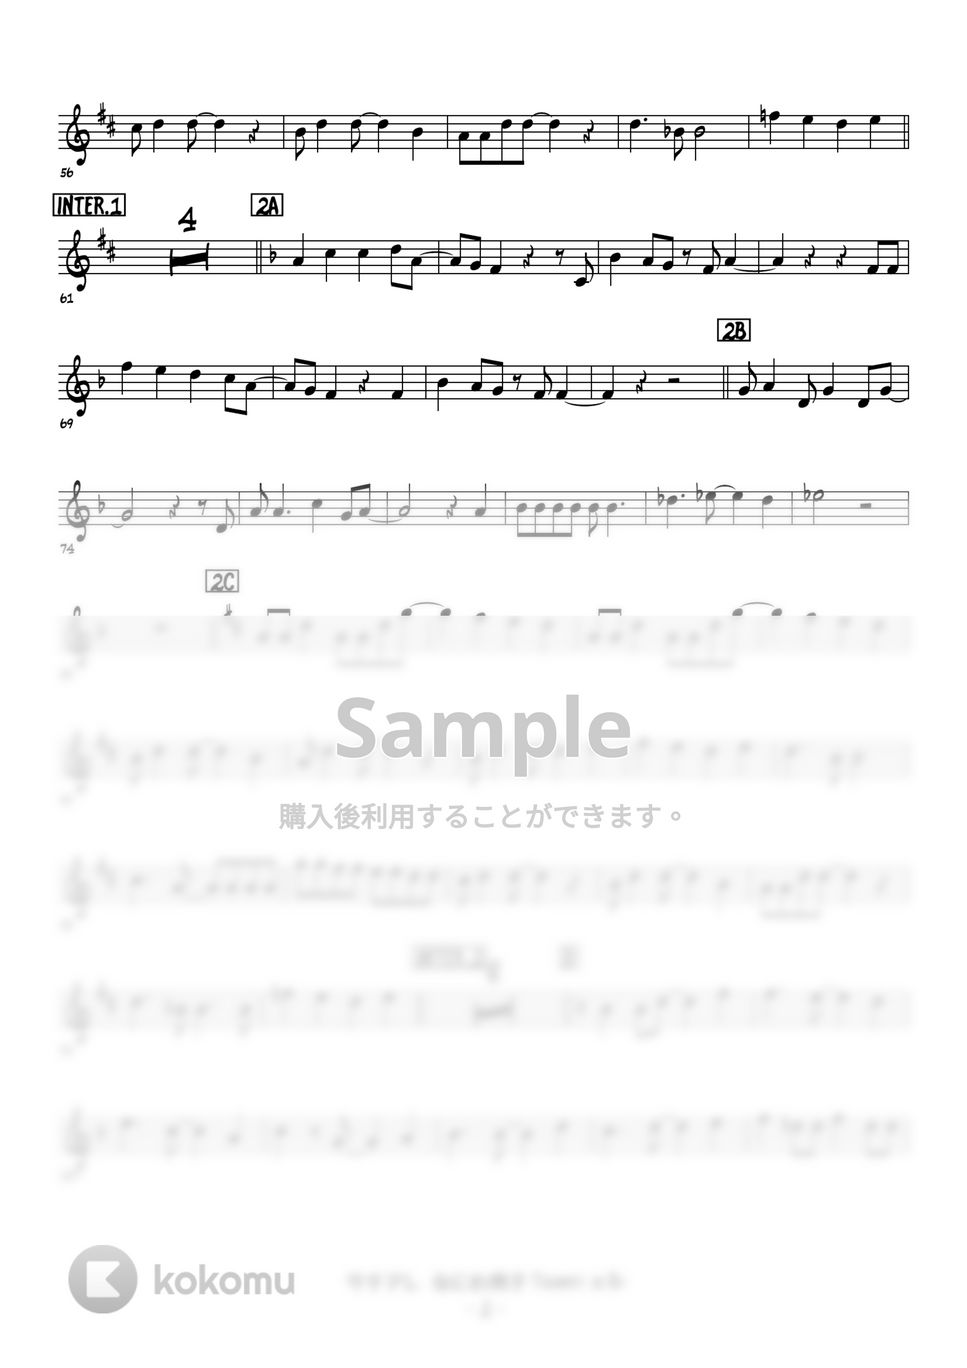 なにわ男子 - サチアレ (トランペットメロディー楽譜) by 高田将利